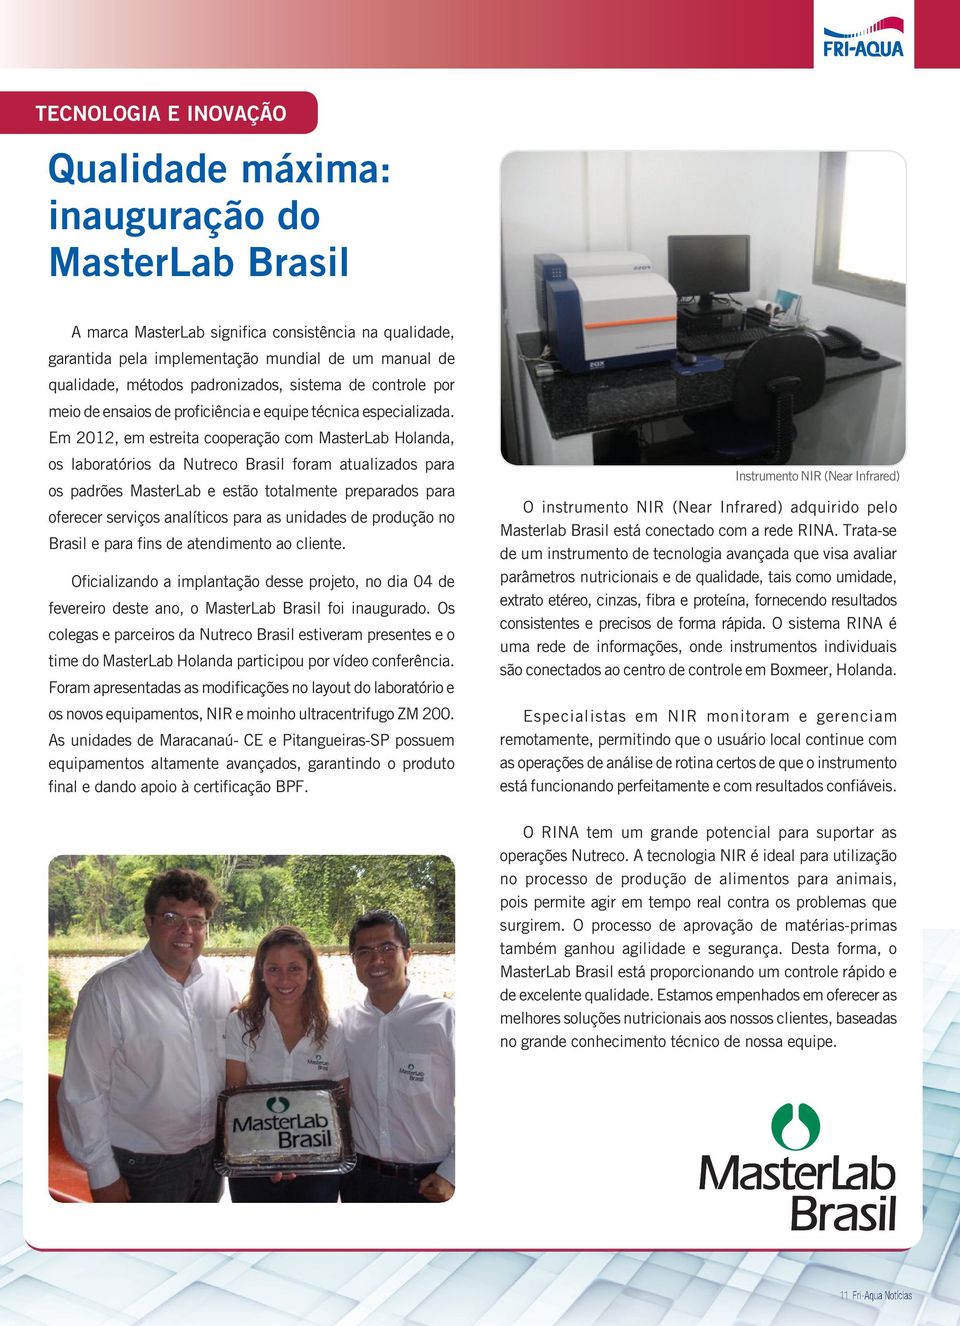 Em 2012, em estreita cooperação com MasterLab Holanda, os laboratórios da Nutreco Brasil foram atualizados para os padrões MasterLab e estão totalmente preparados para oferecer serviços analíticos